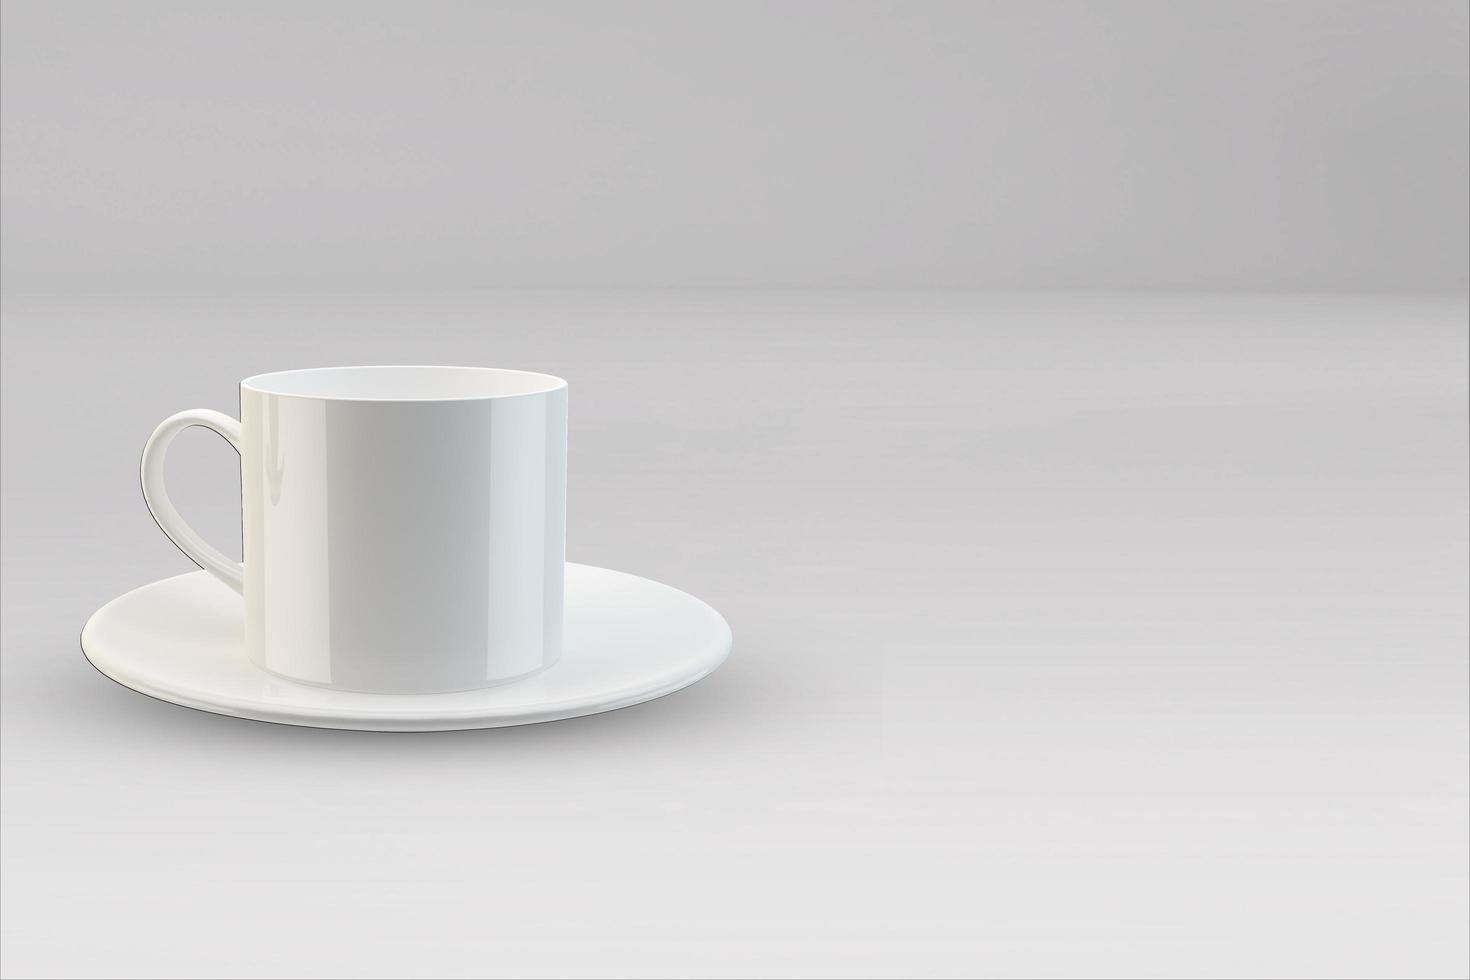 tazze realistiche in bianco da caffè o da tè con manico. tazza di porcellana per il modello di modello di tè o caffè isolato. tazza da tè realistica per colazione, illustrazione 3d foto